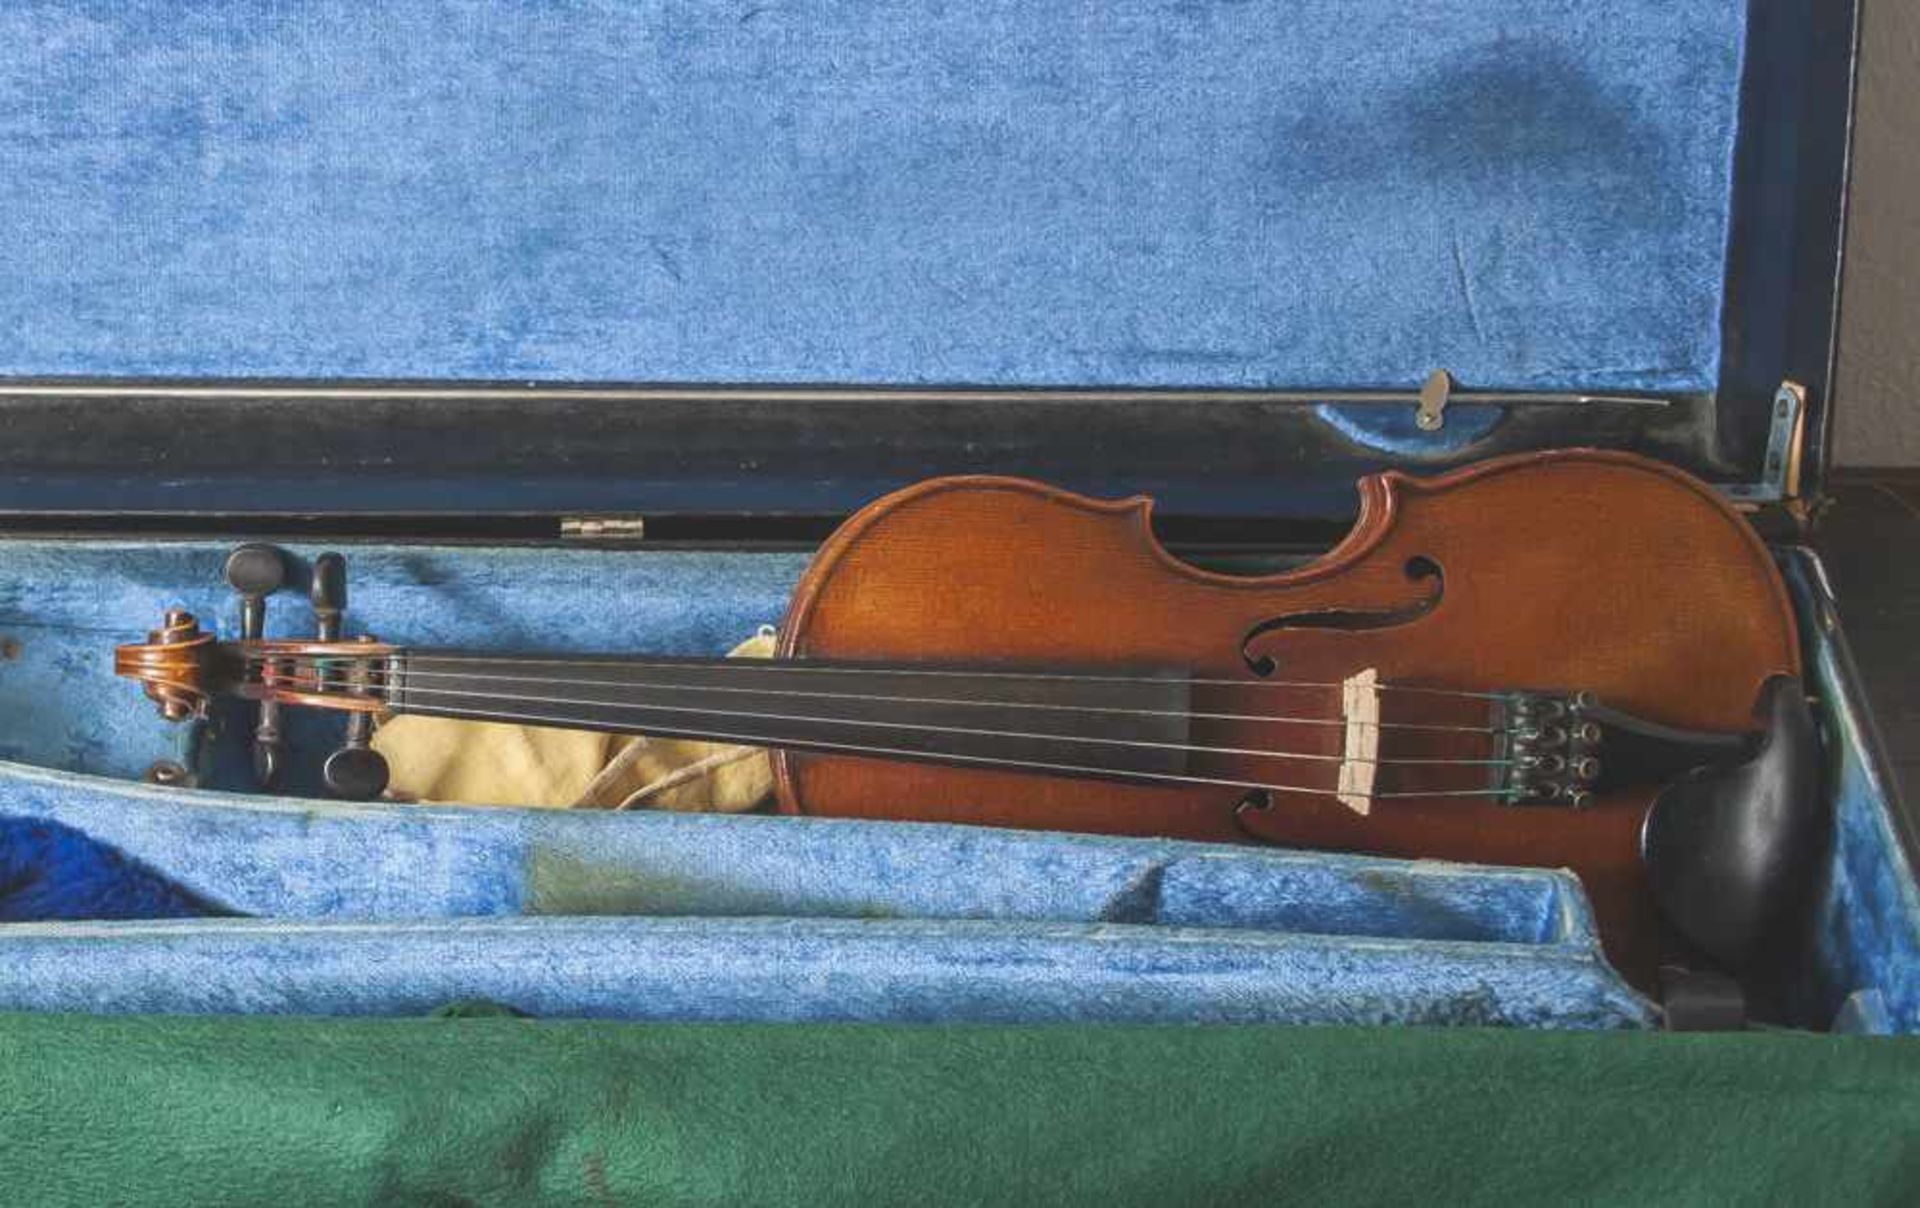 Violine mit Bogen, wohl Anfang 20. Jahrhundert, Steg wohl ergänzt, sonst gute Erhaltung, im